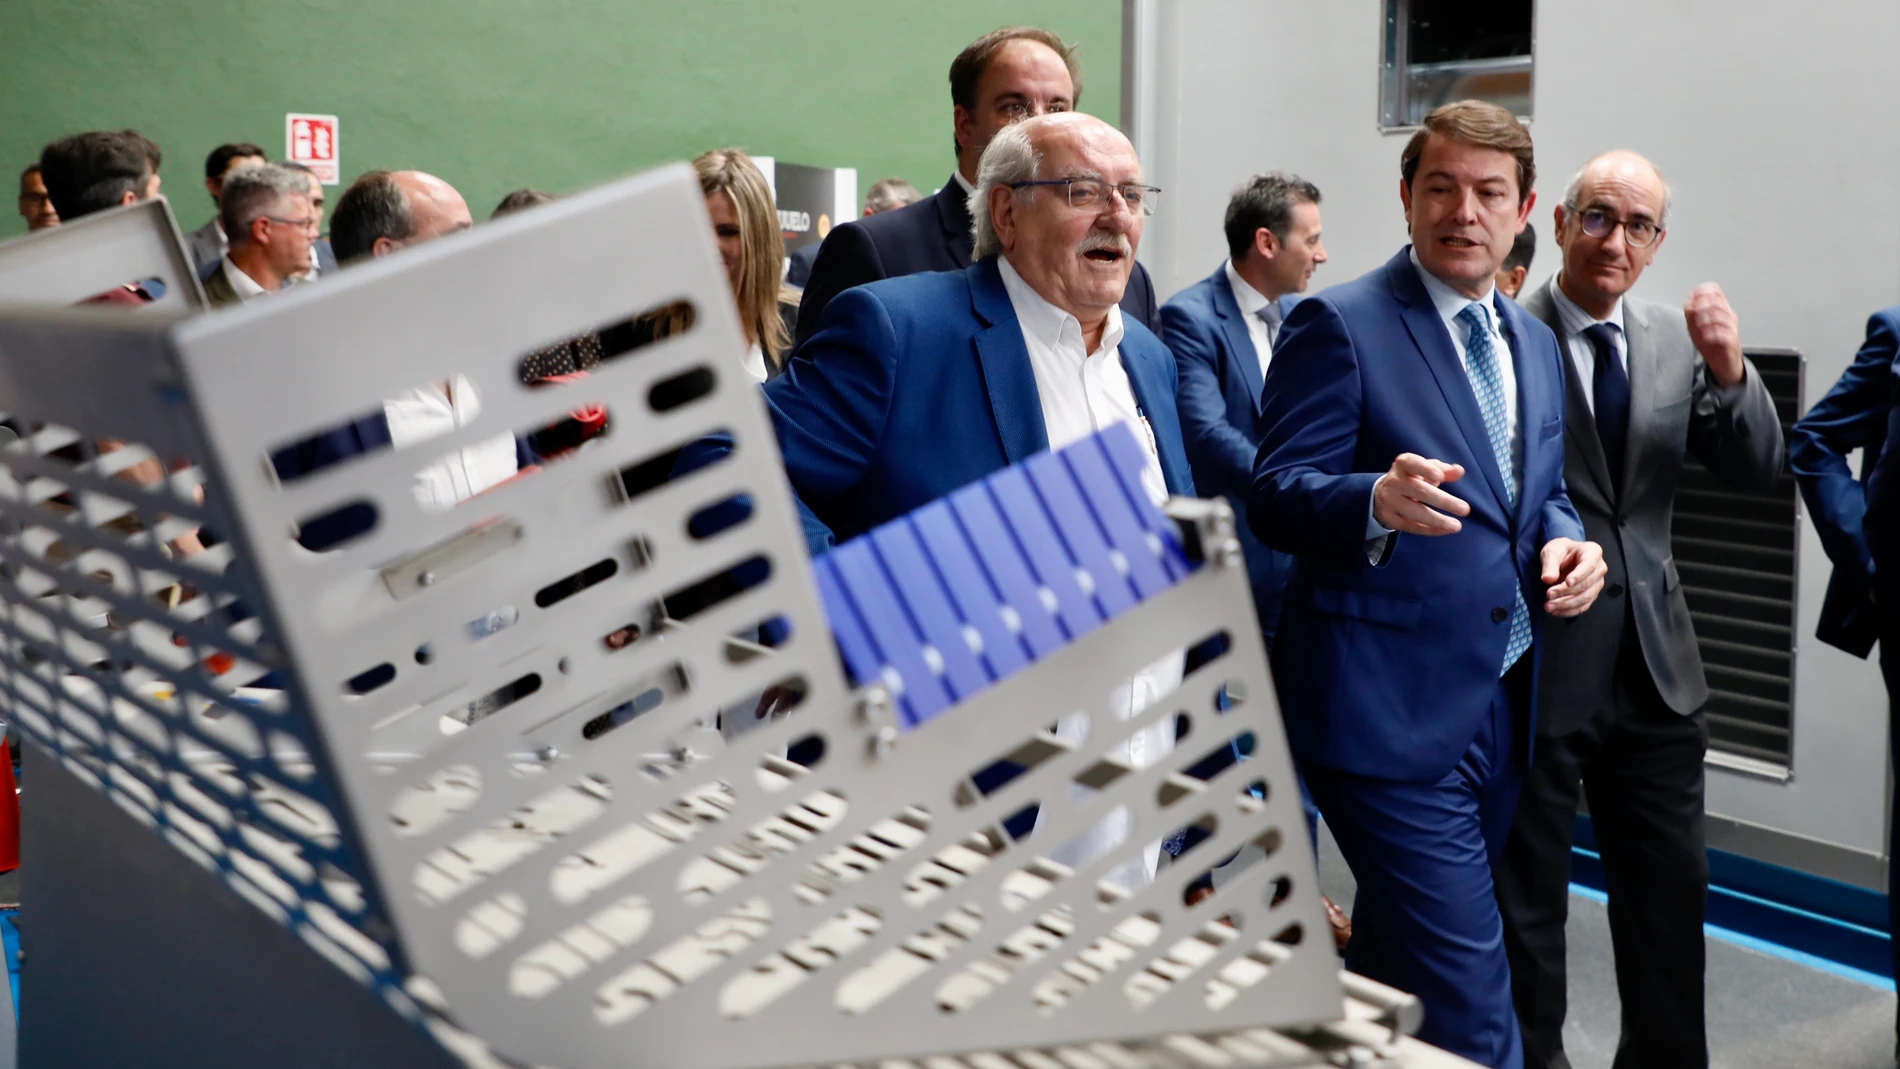 El presidente de la Junta de Castilla y León, Alfonso Fernández Mañueco, inaugura la XX Edición de la Feria de la Industria Cárnica Guijuelo 2022 - FIC 22